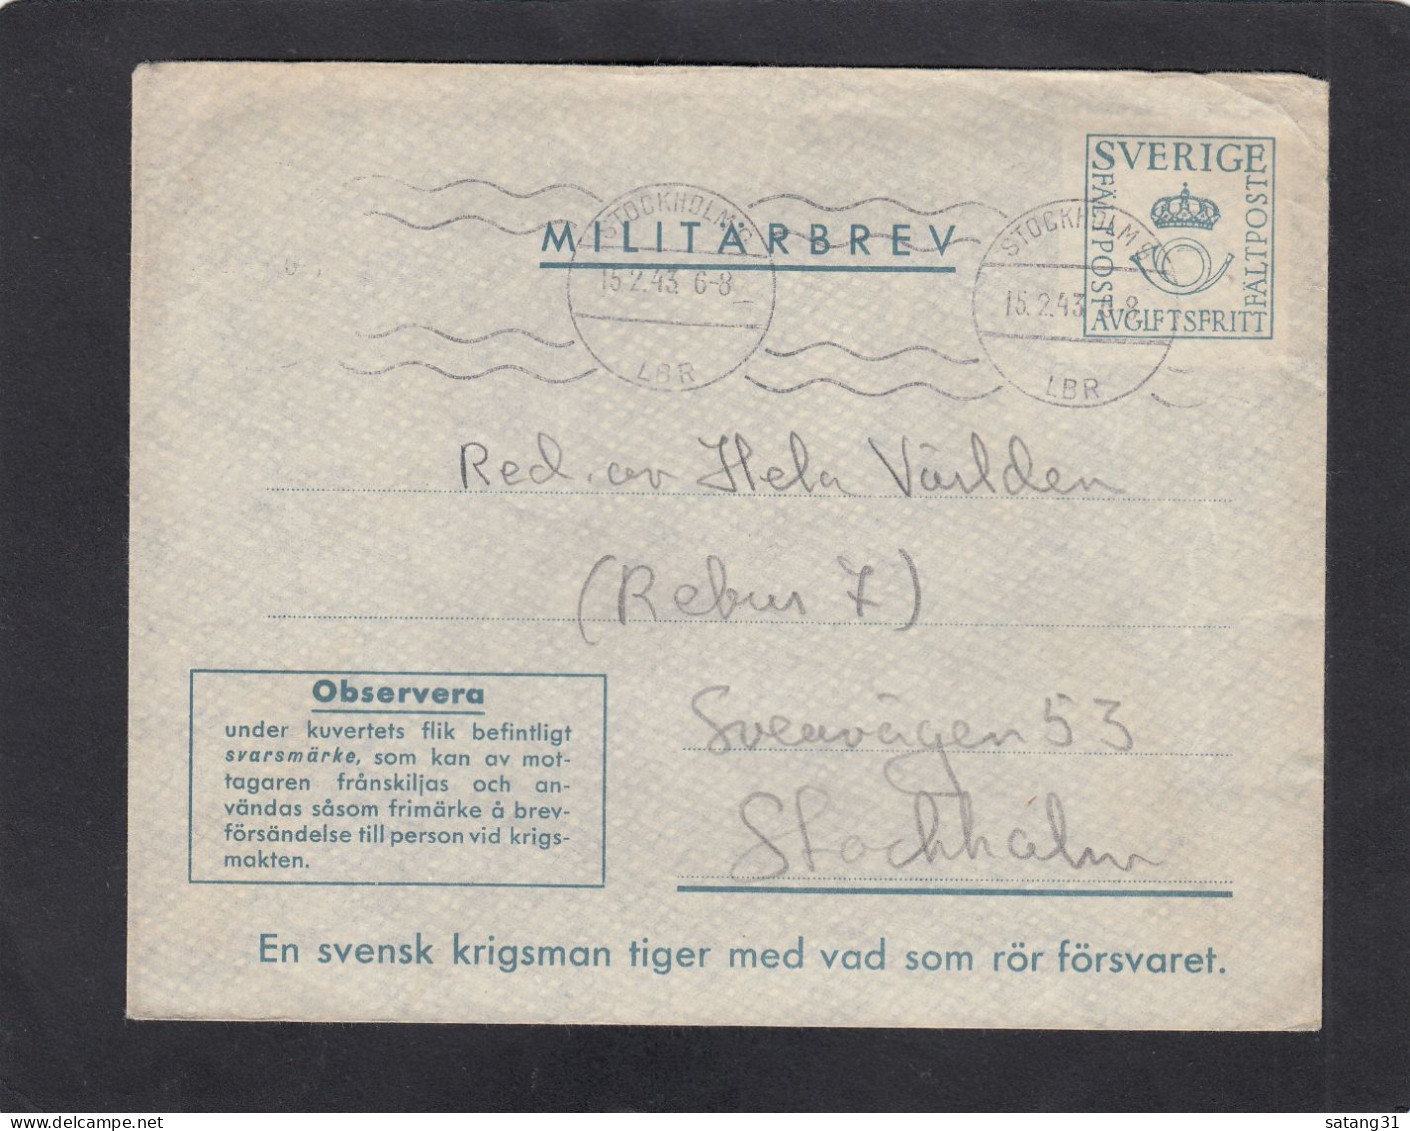 FELDPOST AUS STOCKHOLM,MIT B.MARKE AUF DER RÜCKSEITE ZUR ANTWORT,1943. - Militaires